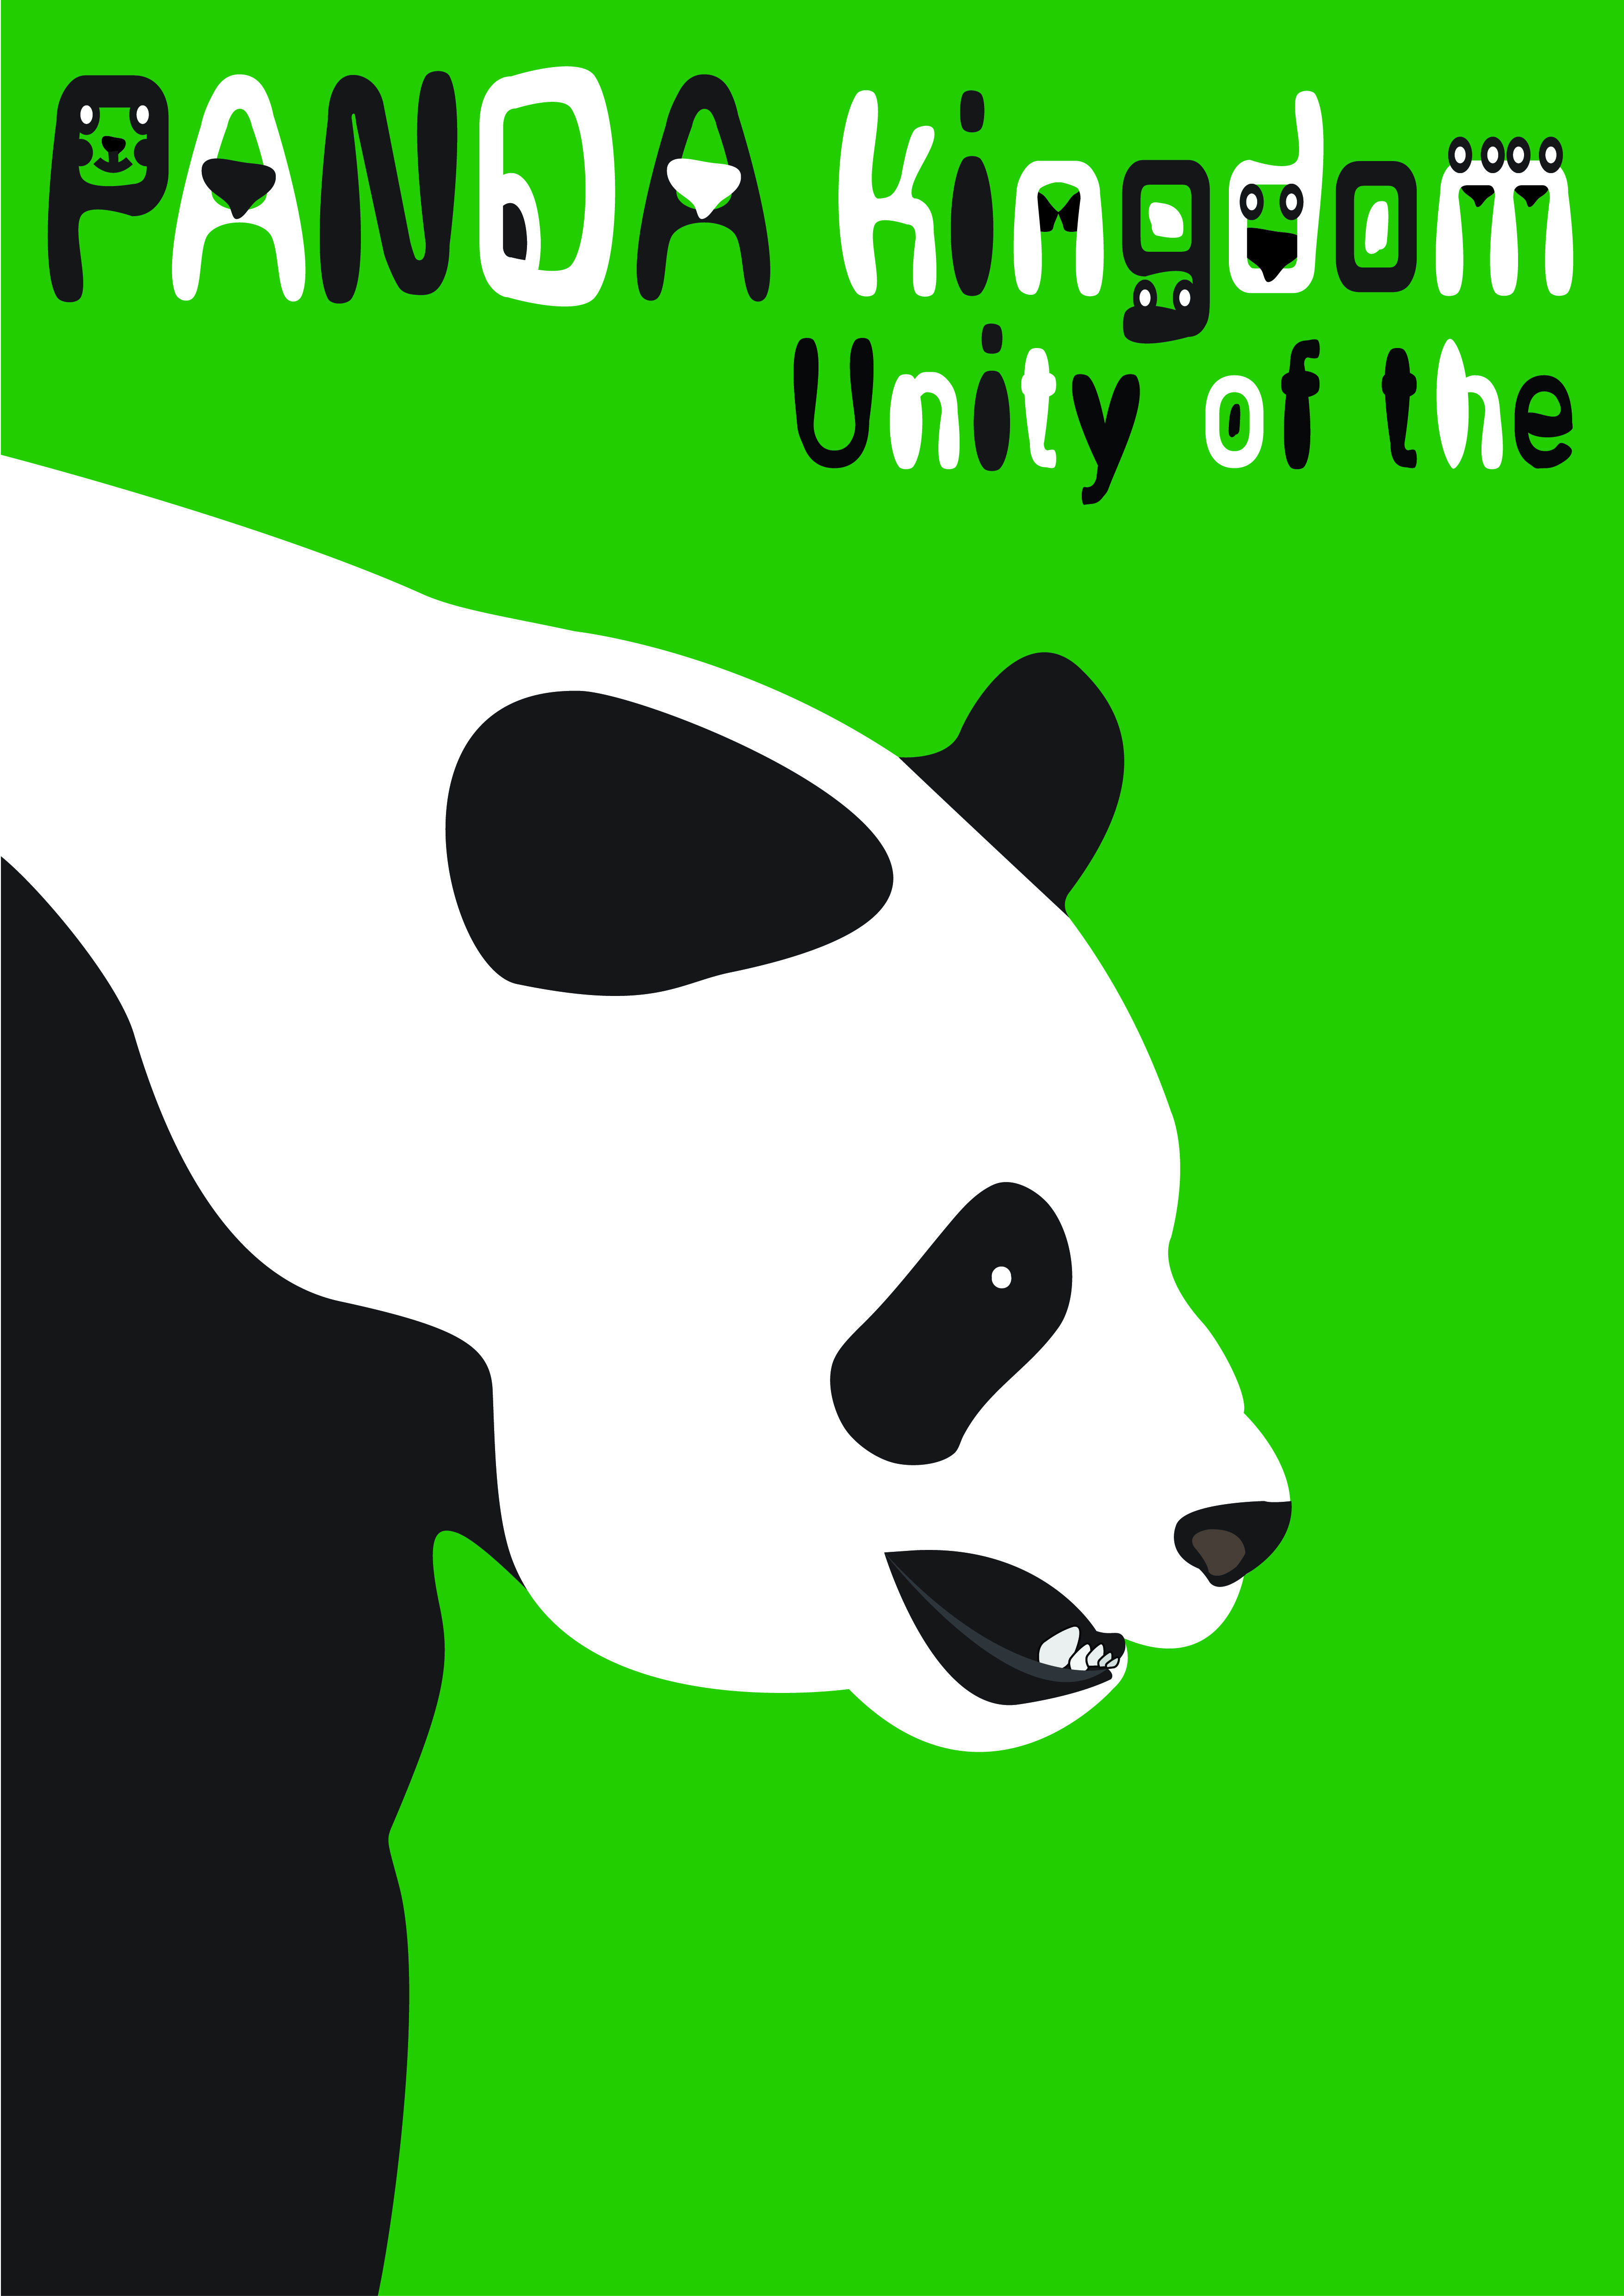 保护熊猫创意海报图片